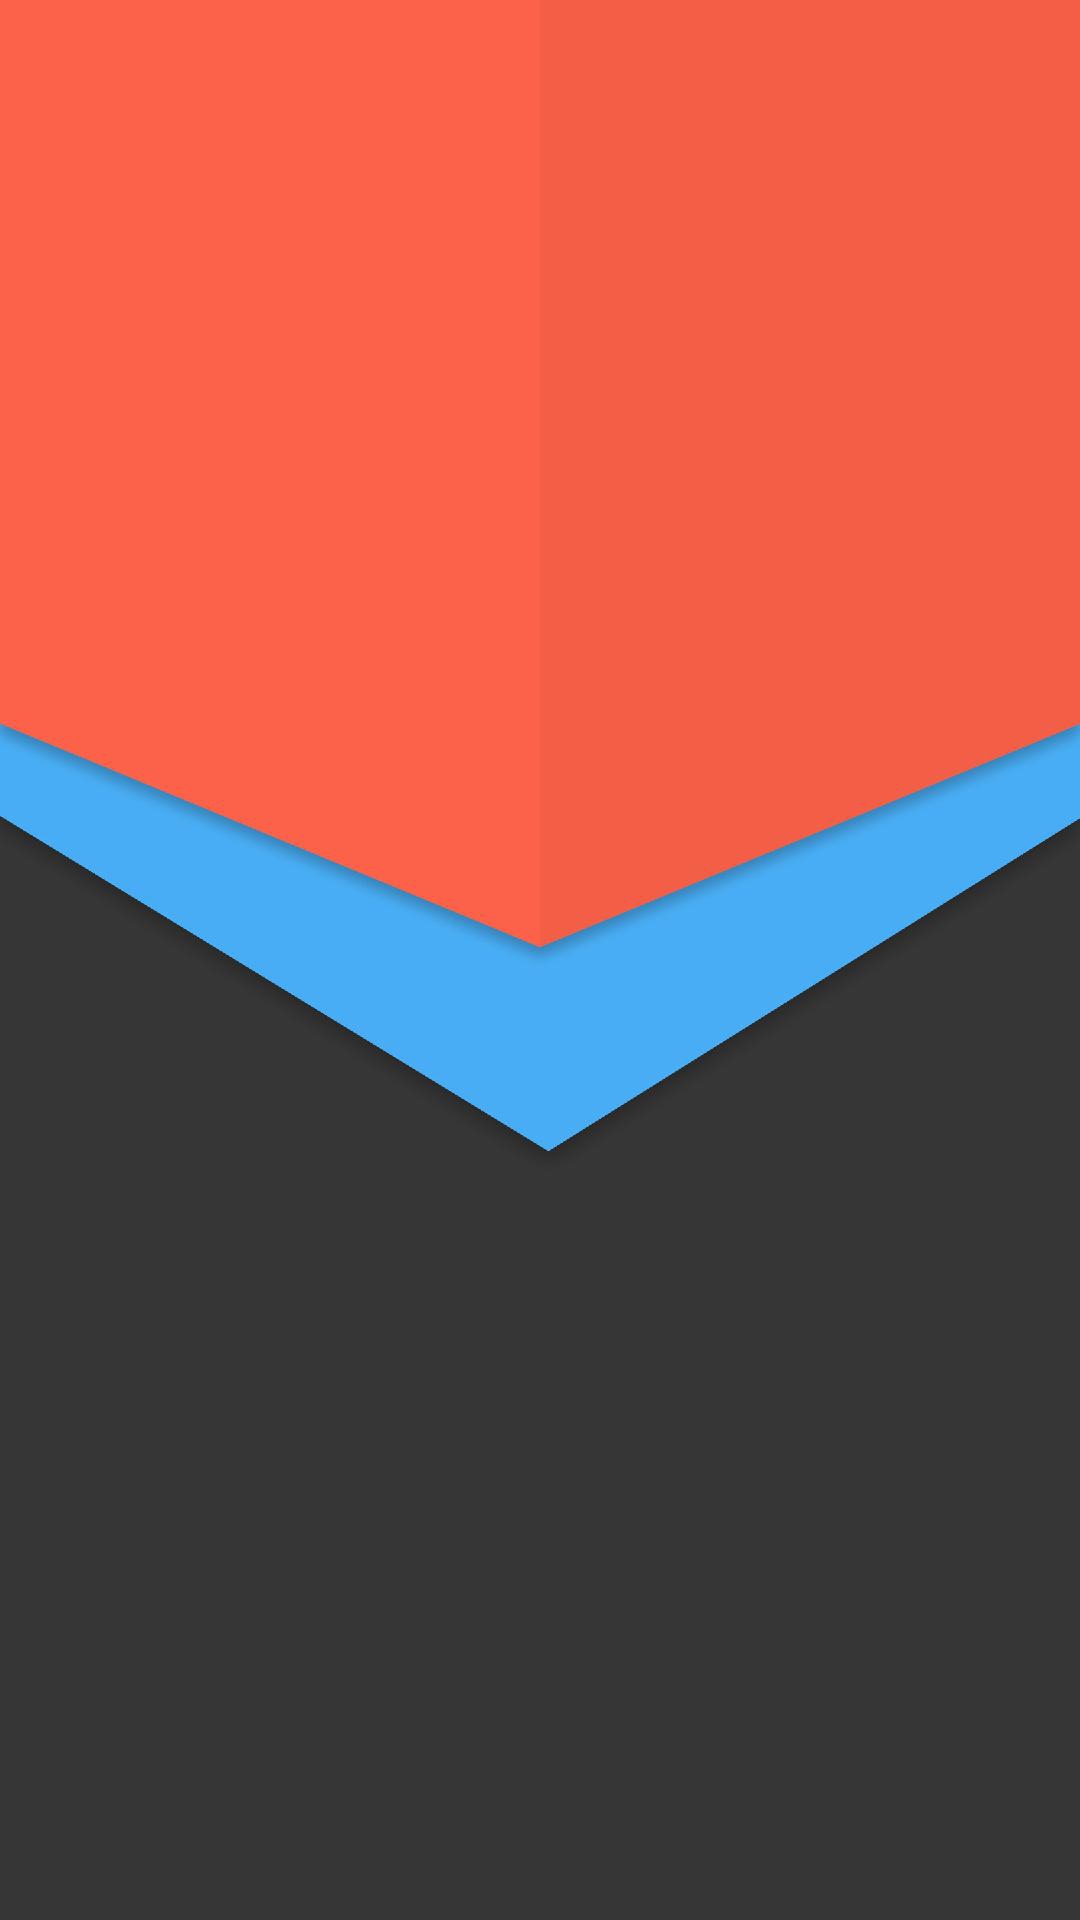 minimalistische mustertapete,blau,orange,rot,linie,elektrisches blau